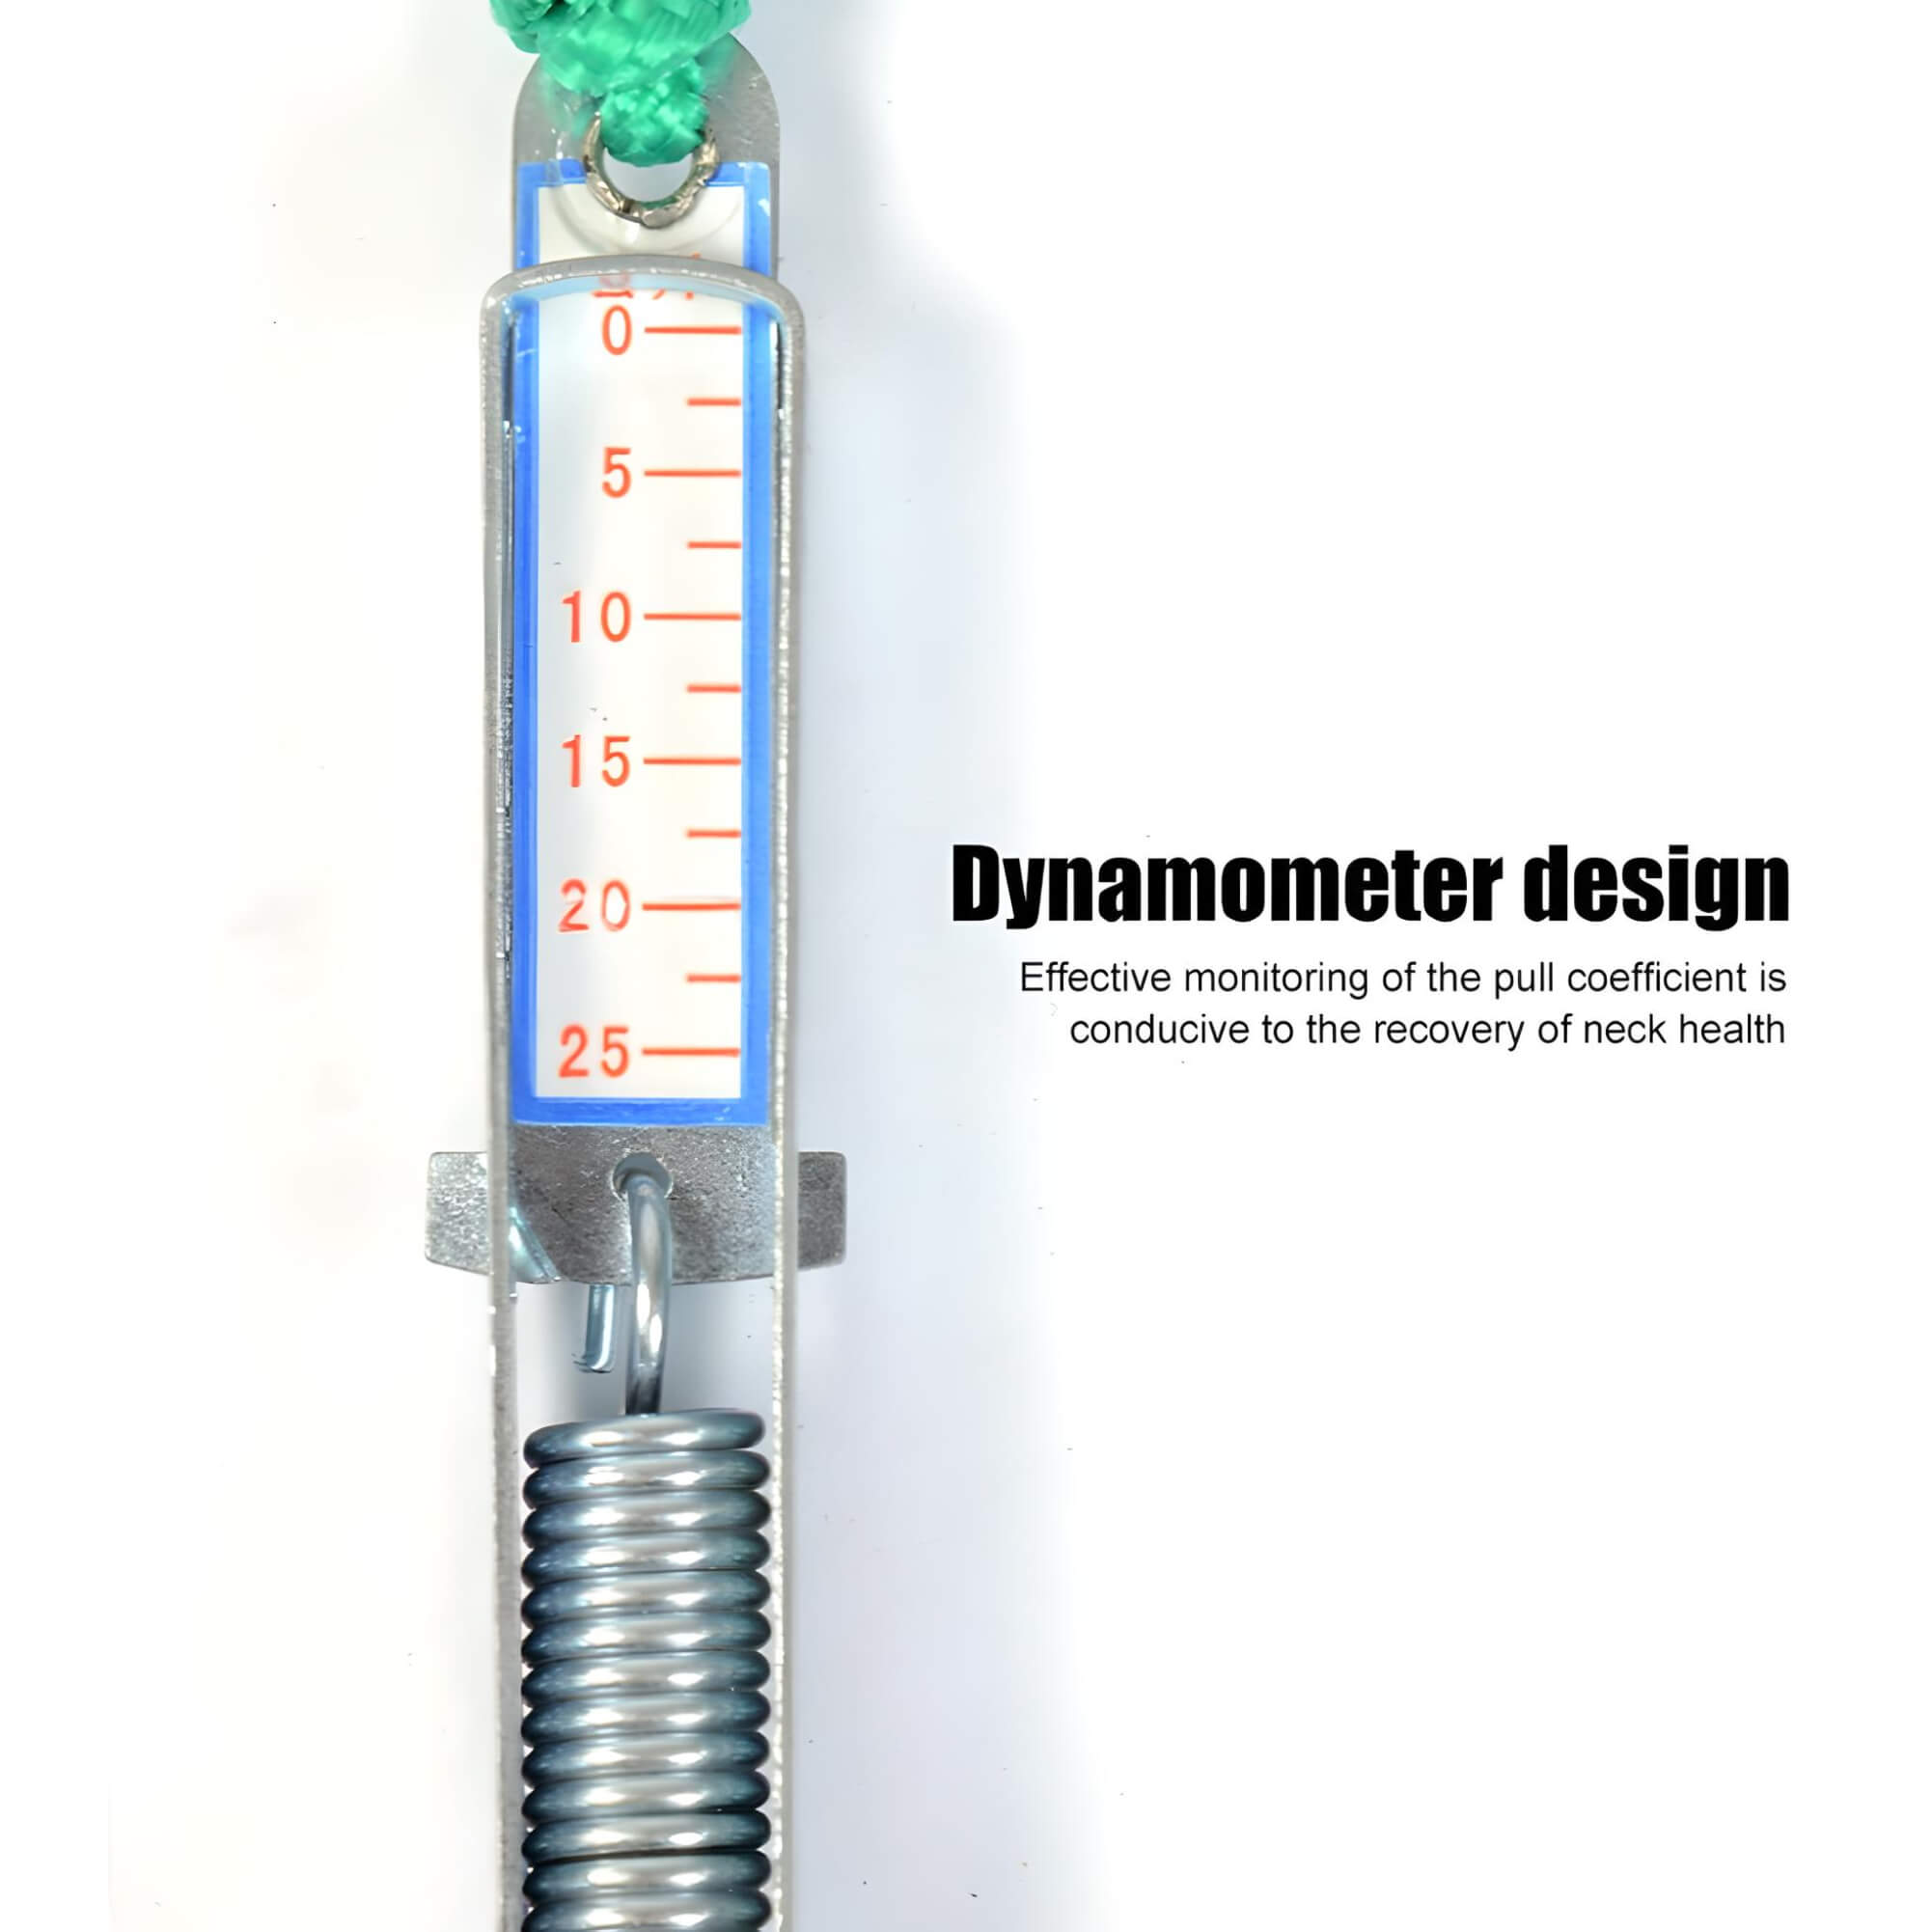 dynamometer-design-of-neck-sling